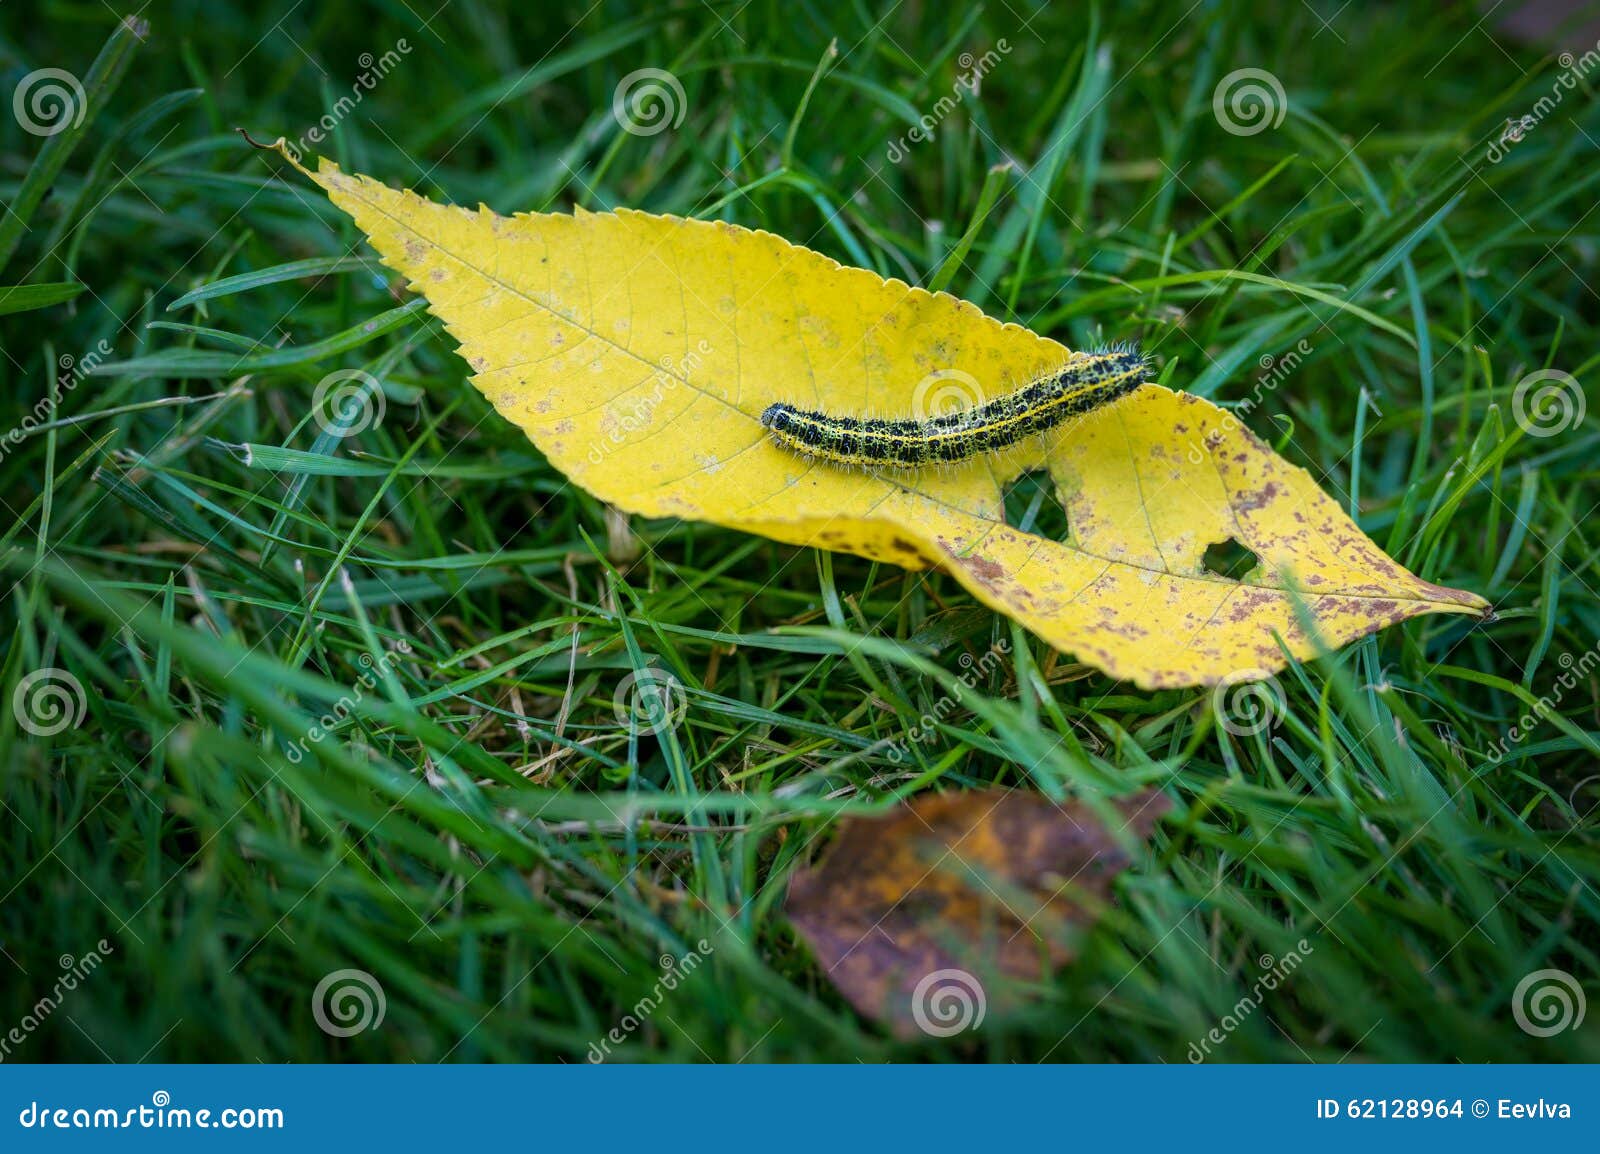 Картинки гусеница в осенних листьях